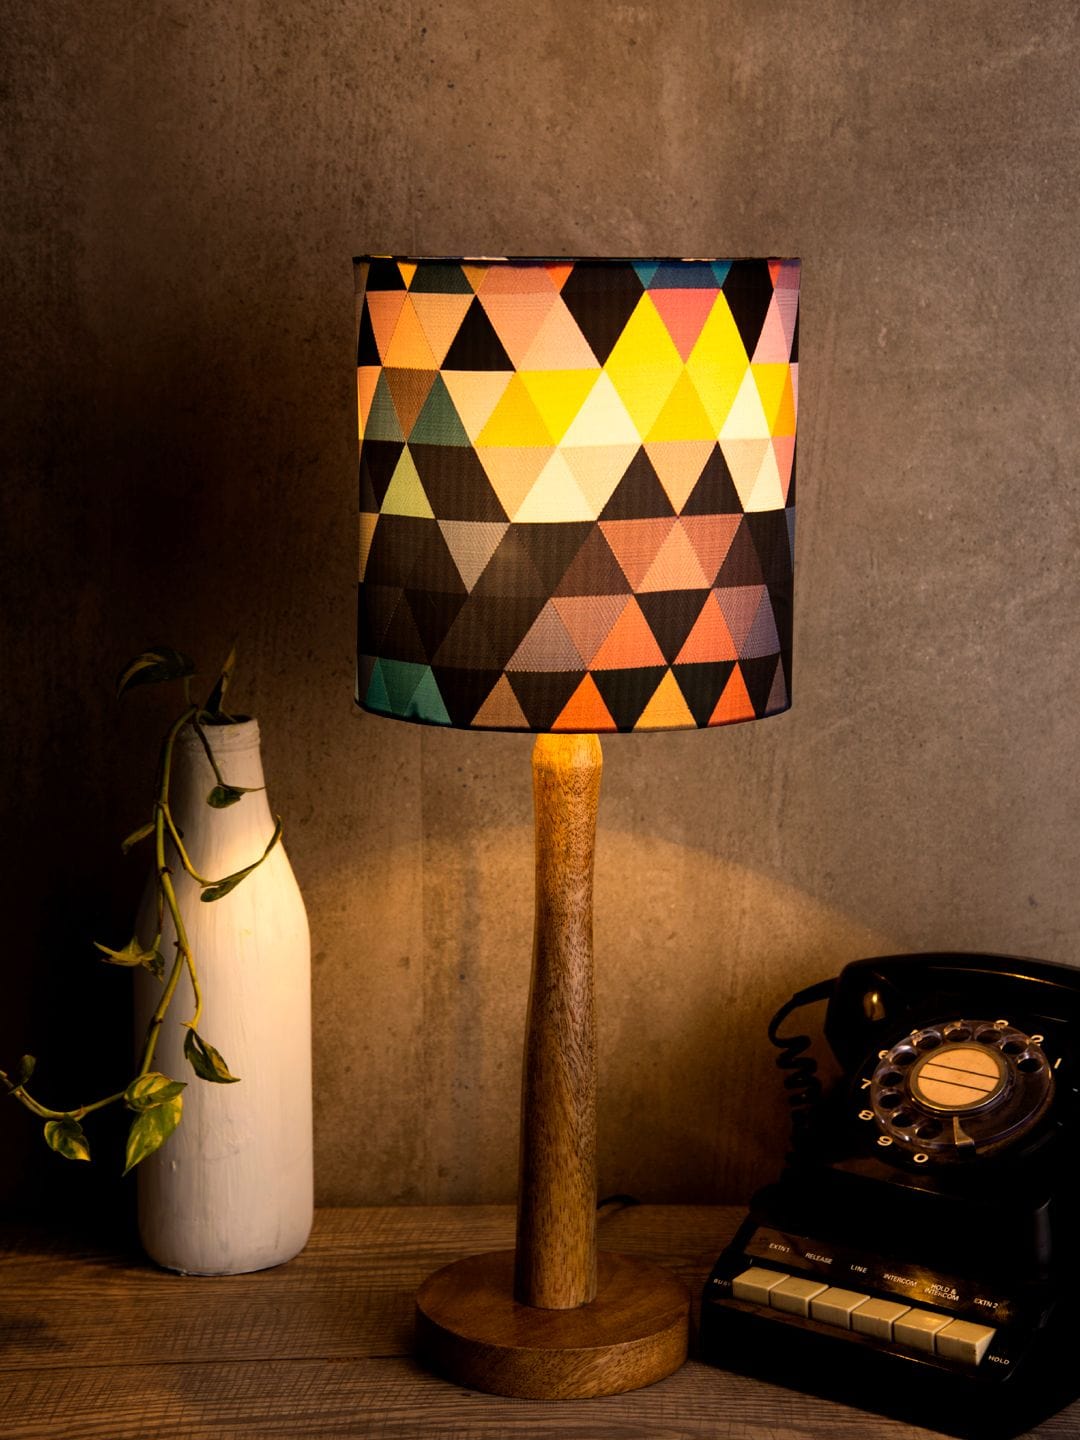 Hocus Pocus Wooden Lamp